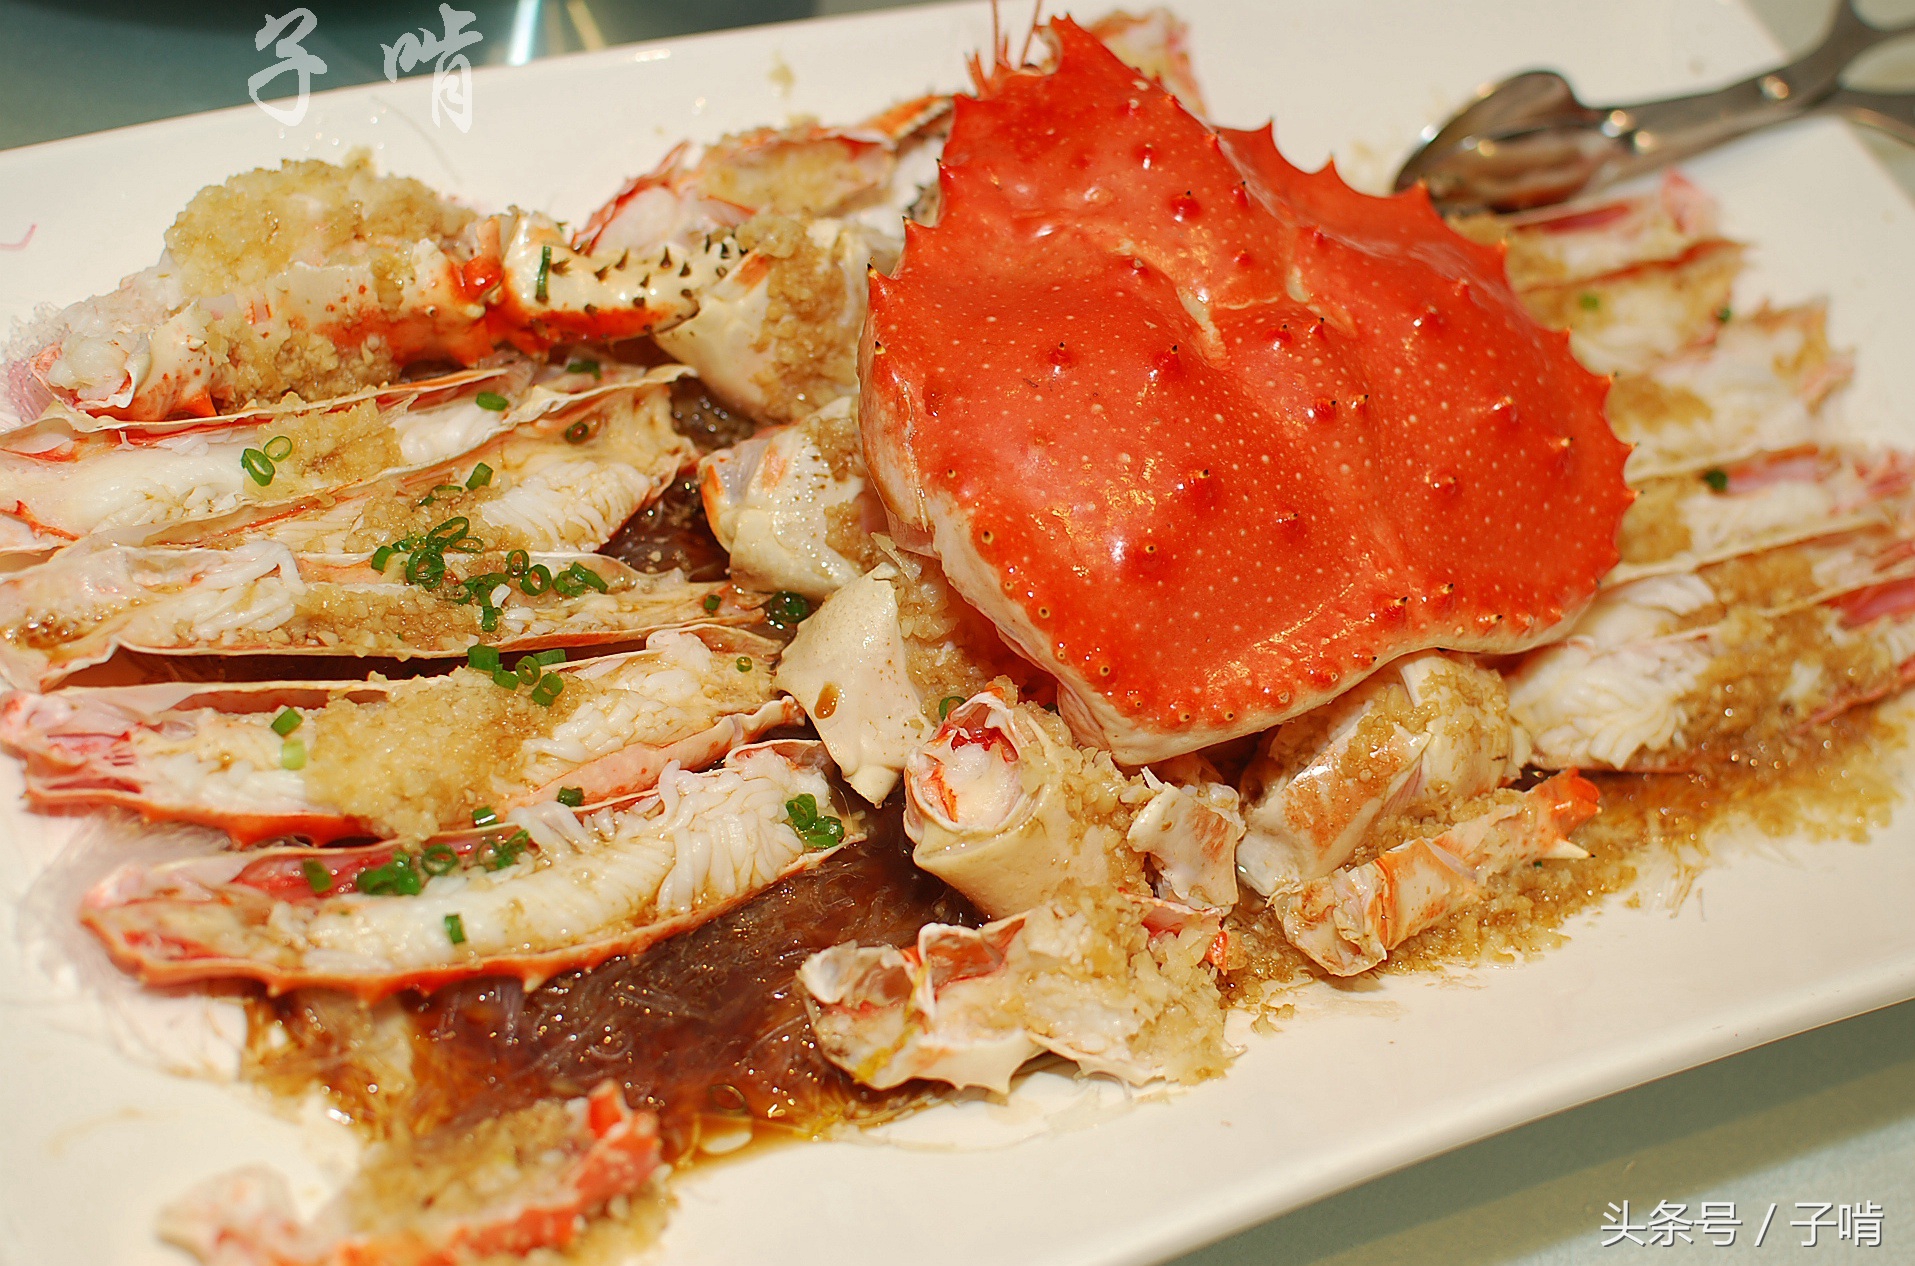 帝王蟹,也是蒜蓉粉丝蒸的,这个螃蟹2000多元,肉挺多